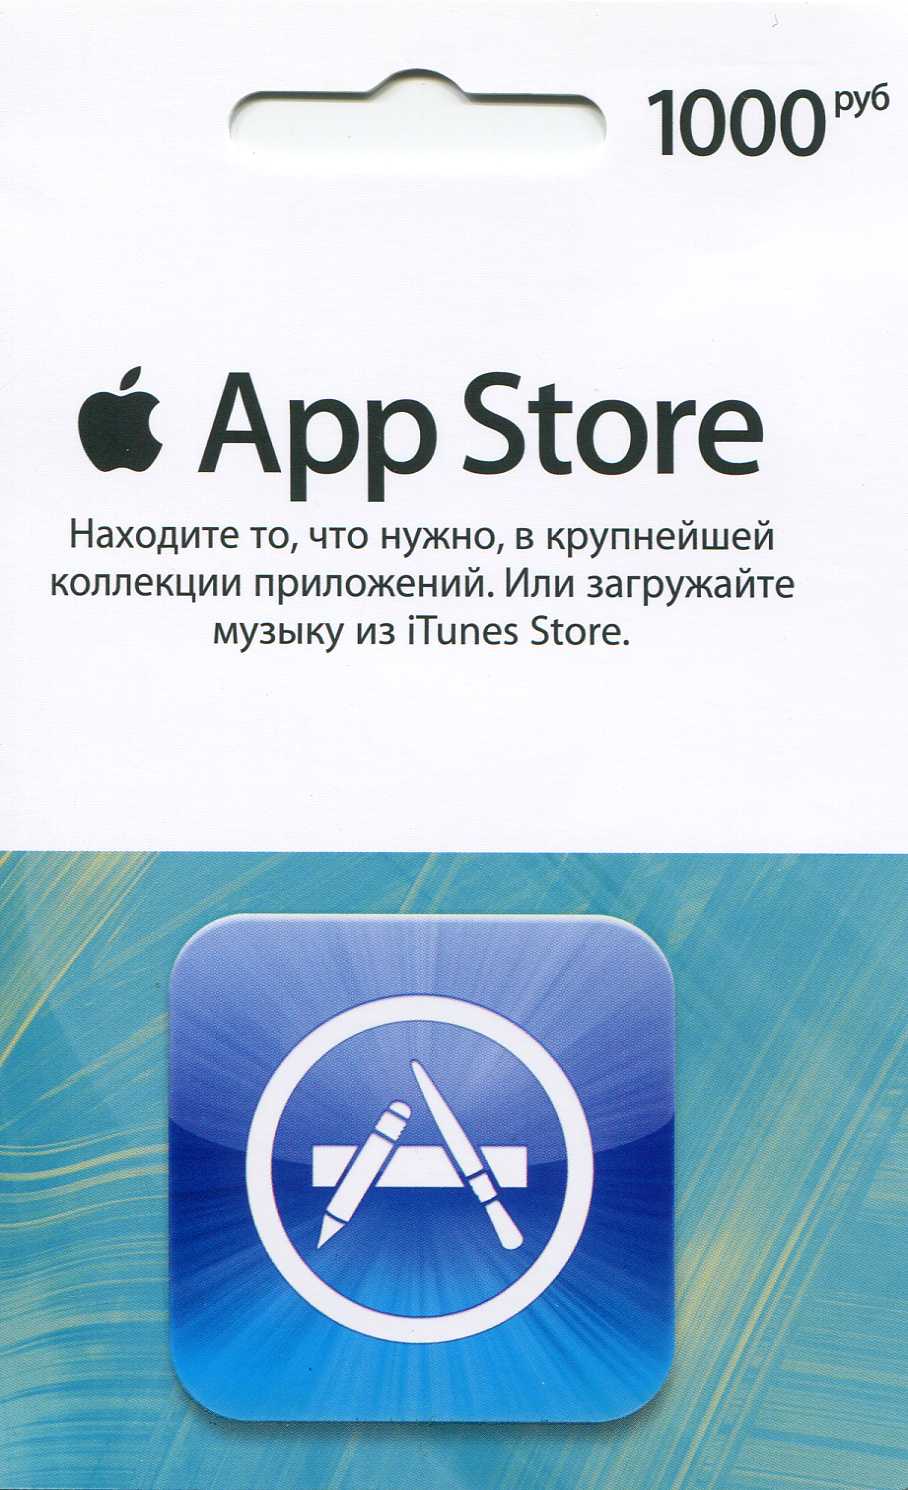 Карта App Store Где Купить